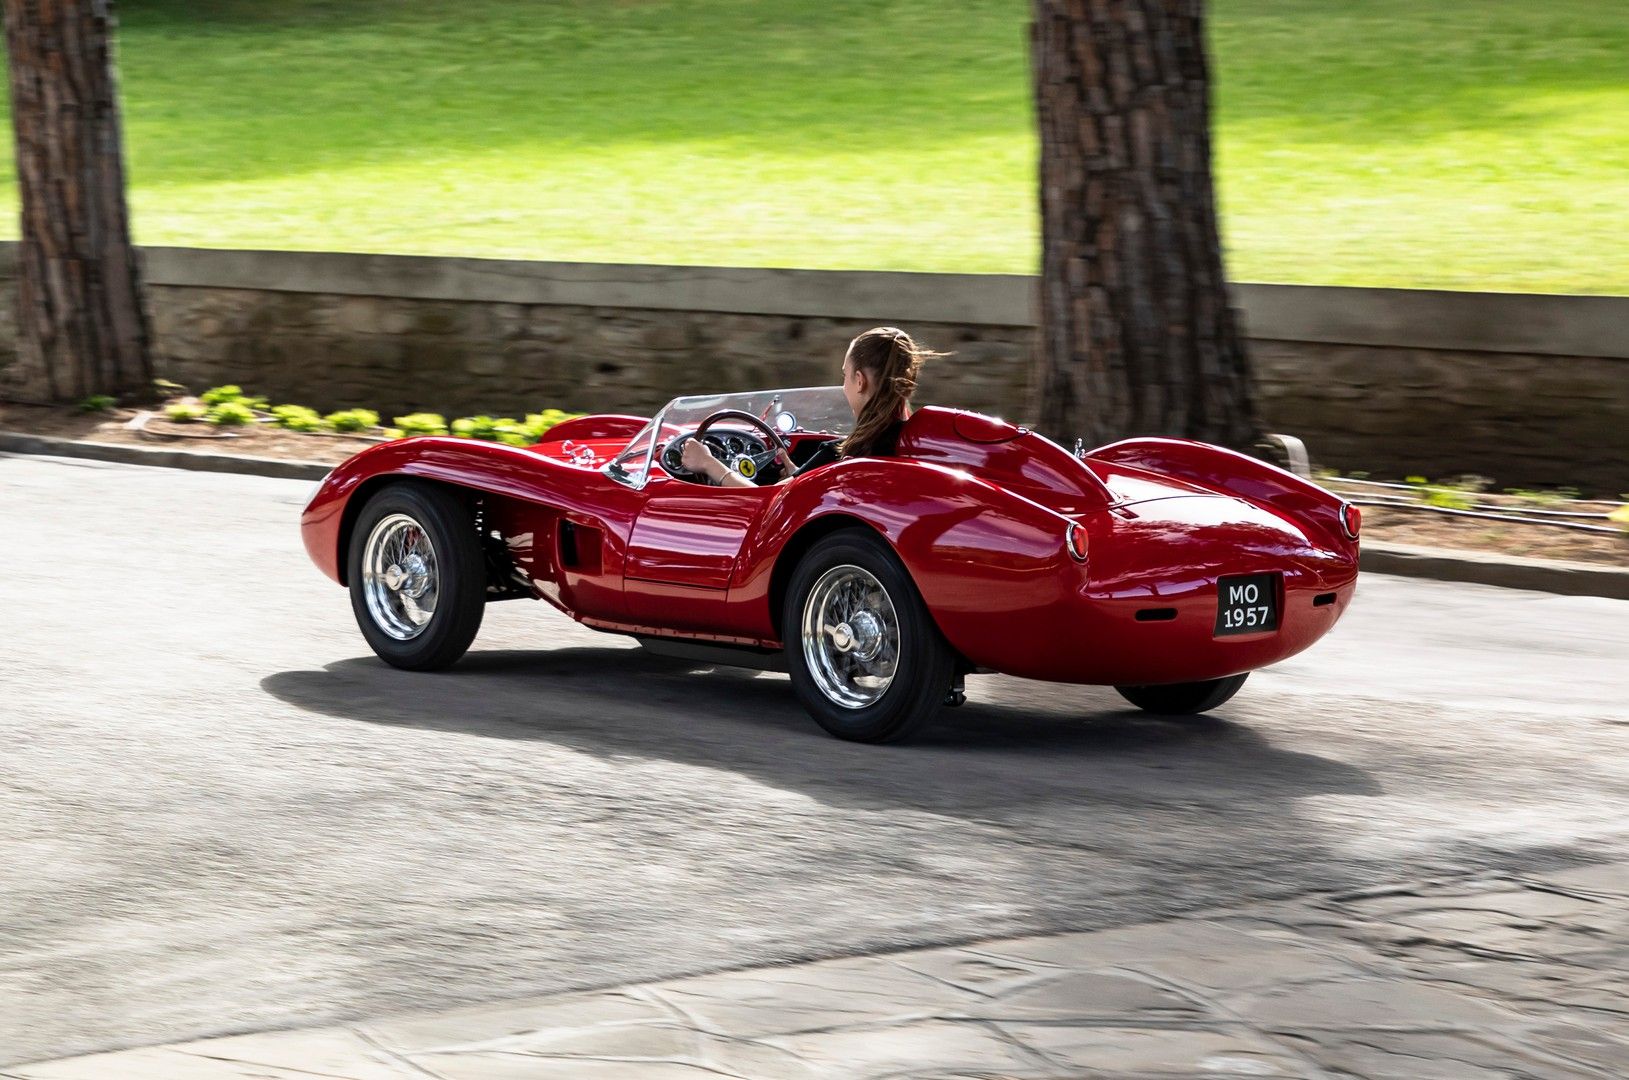 Νέα Ferrari Testa Rossa J με... ηλεκτρικό κινητήρα!